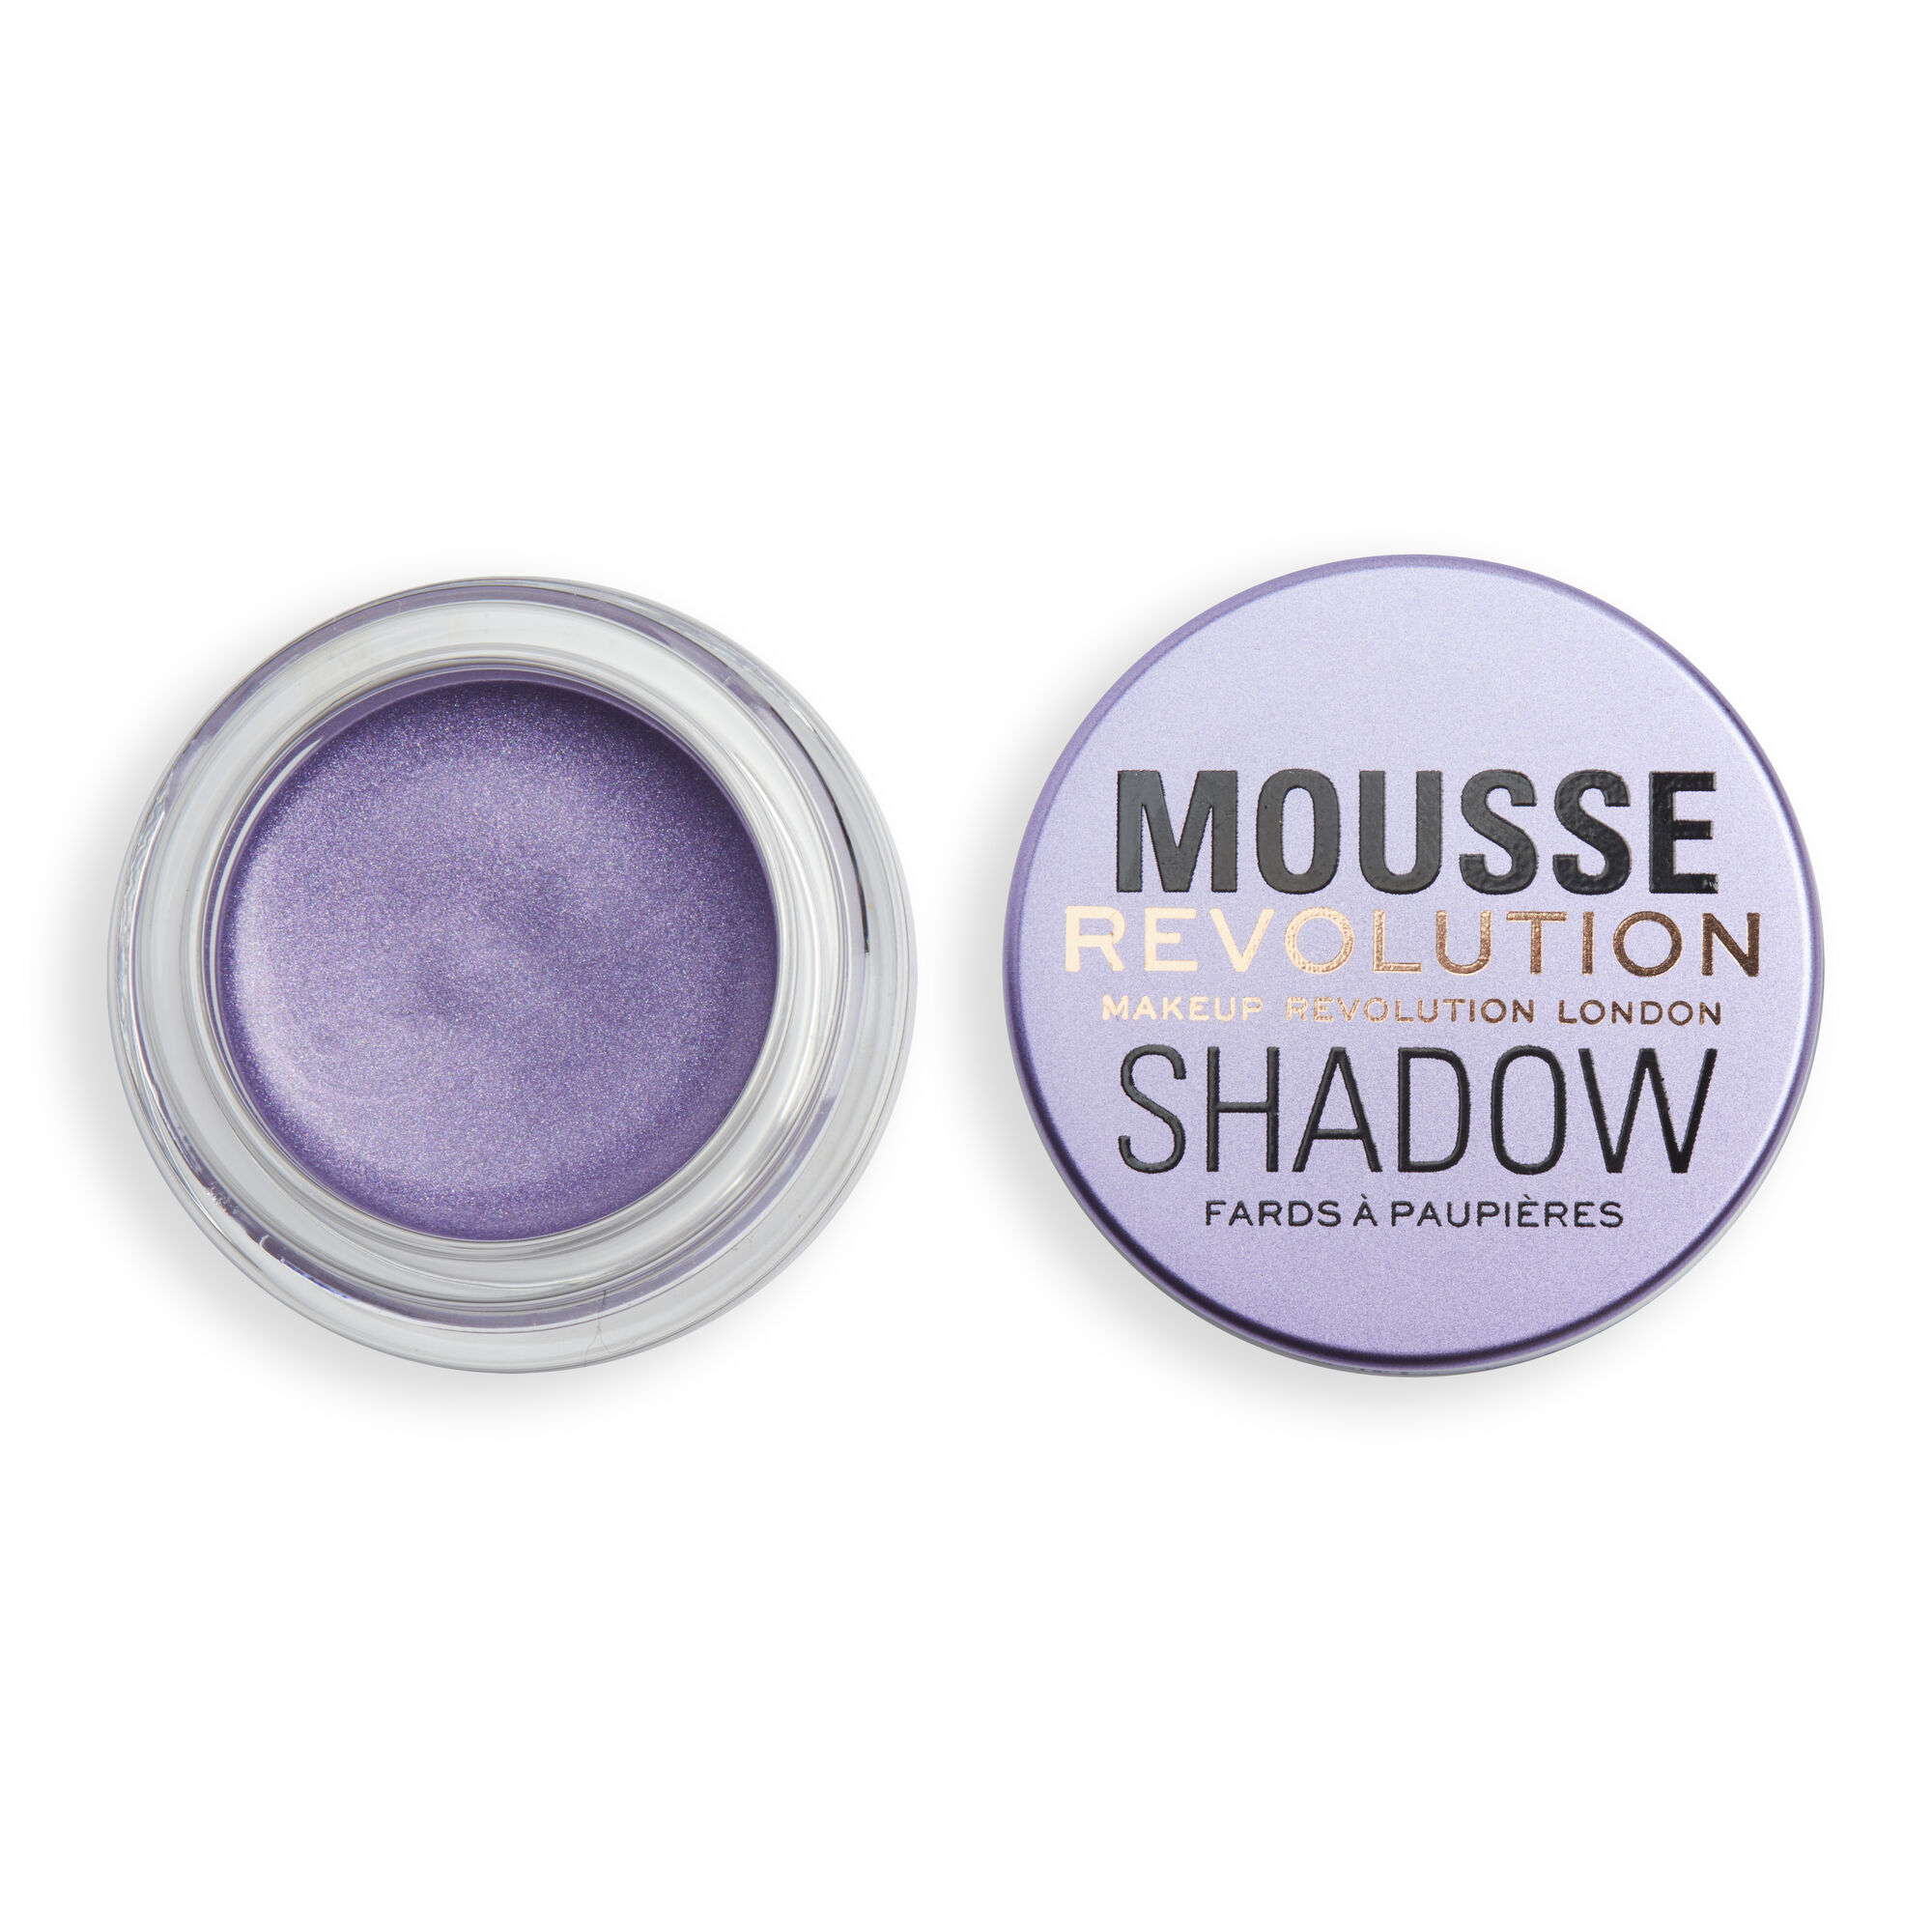 Тени Revolution Makeup кремовые для век Mousse Cream Eyeshadow, Lilac alvin d or alvin d’or кремовые тени для век 24h cream eyeshadow